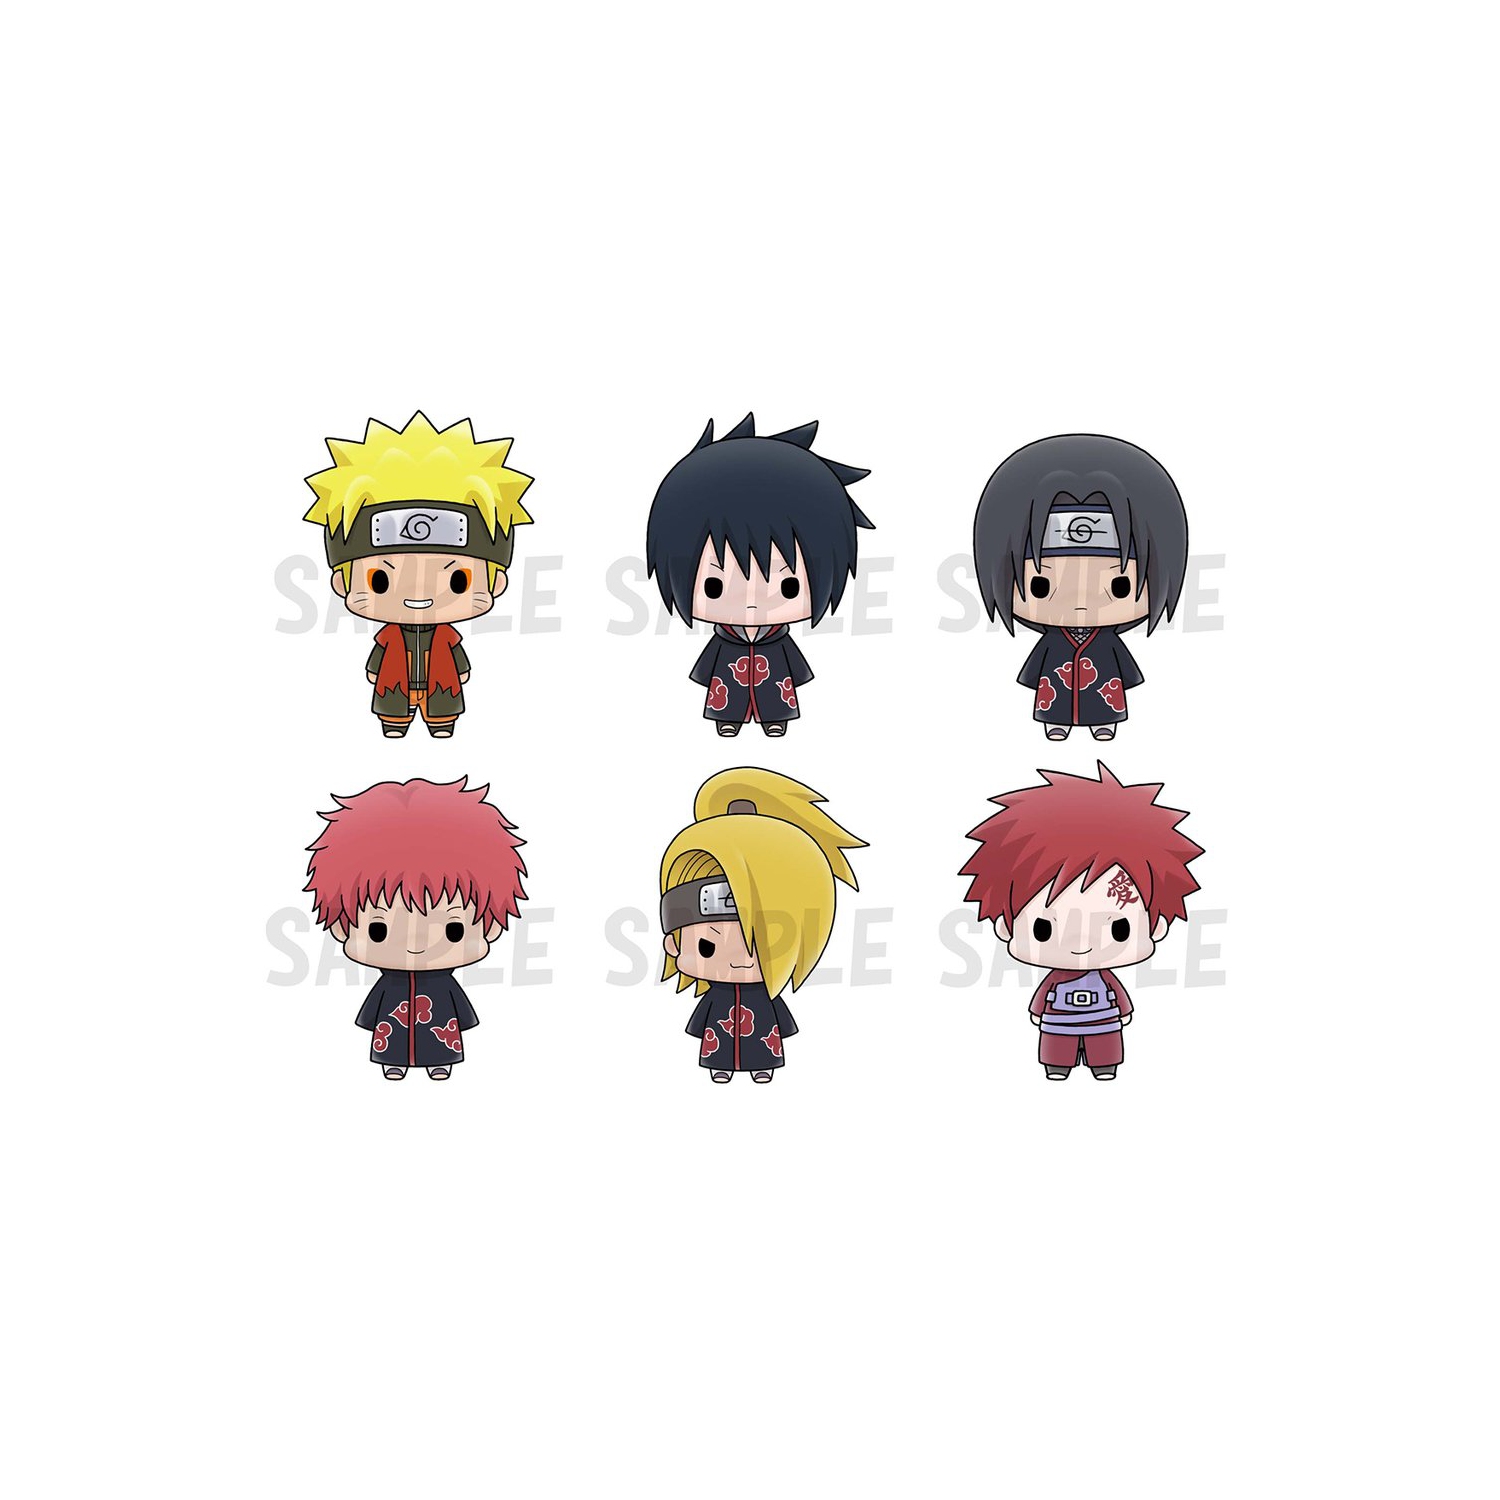 MegaHouse Chokorin Mascot: Naruto Shippuden Vol. 2 Set of 6 Characters